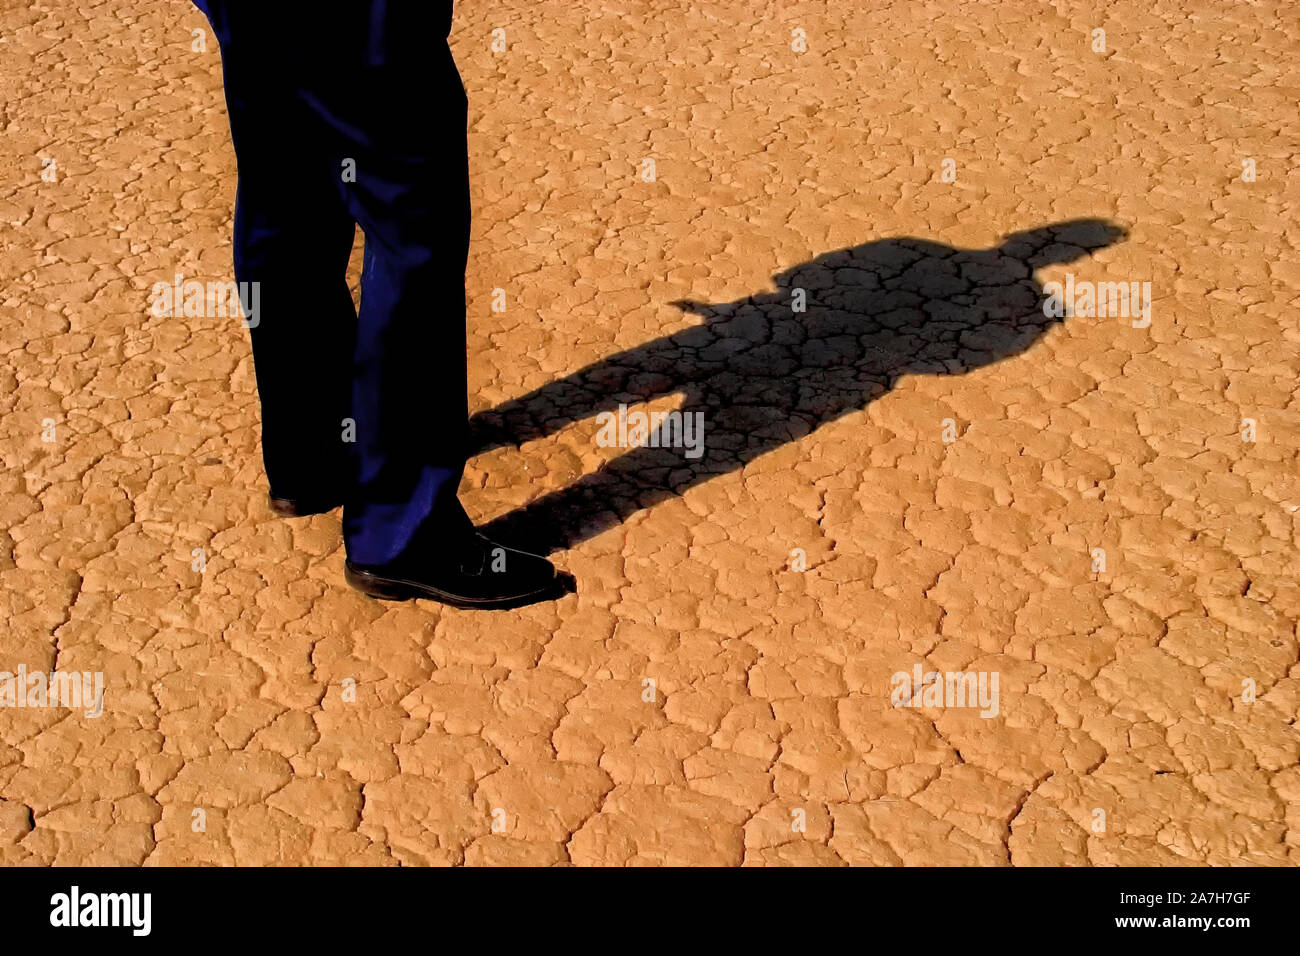 Man's legs in business slacks and full body shadow on cracked desert ground Stock Photo